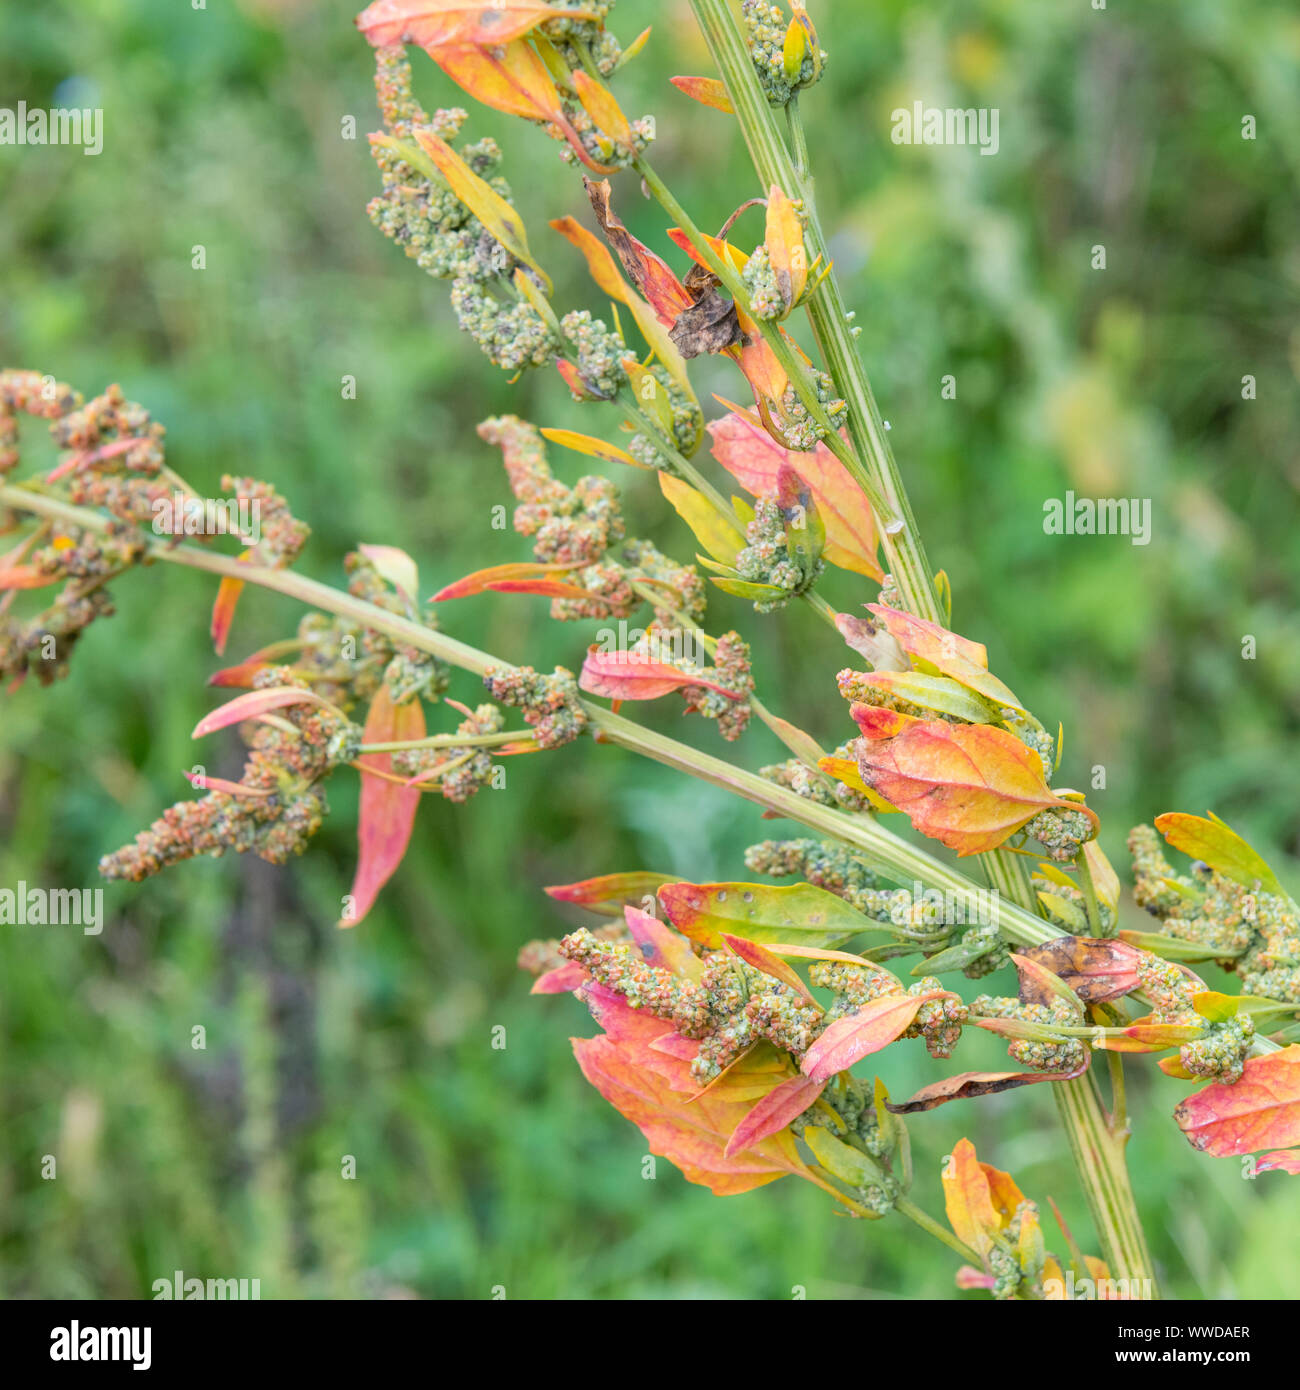 Morendo foglie di Chenopodium / Goosefoot - politica agricola weed - in un angolo di un campo. Eventualmente Chenopodium album - VEDERE LE NOTE per ulteriori dettagli. Foto Stock